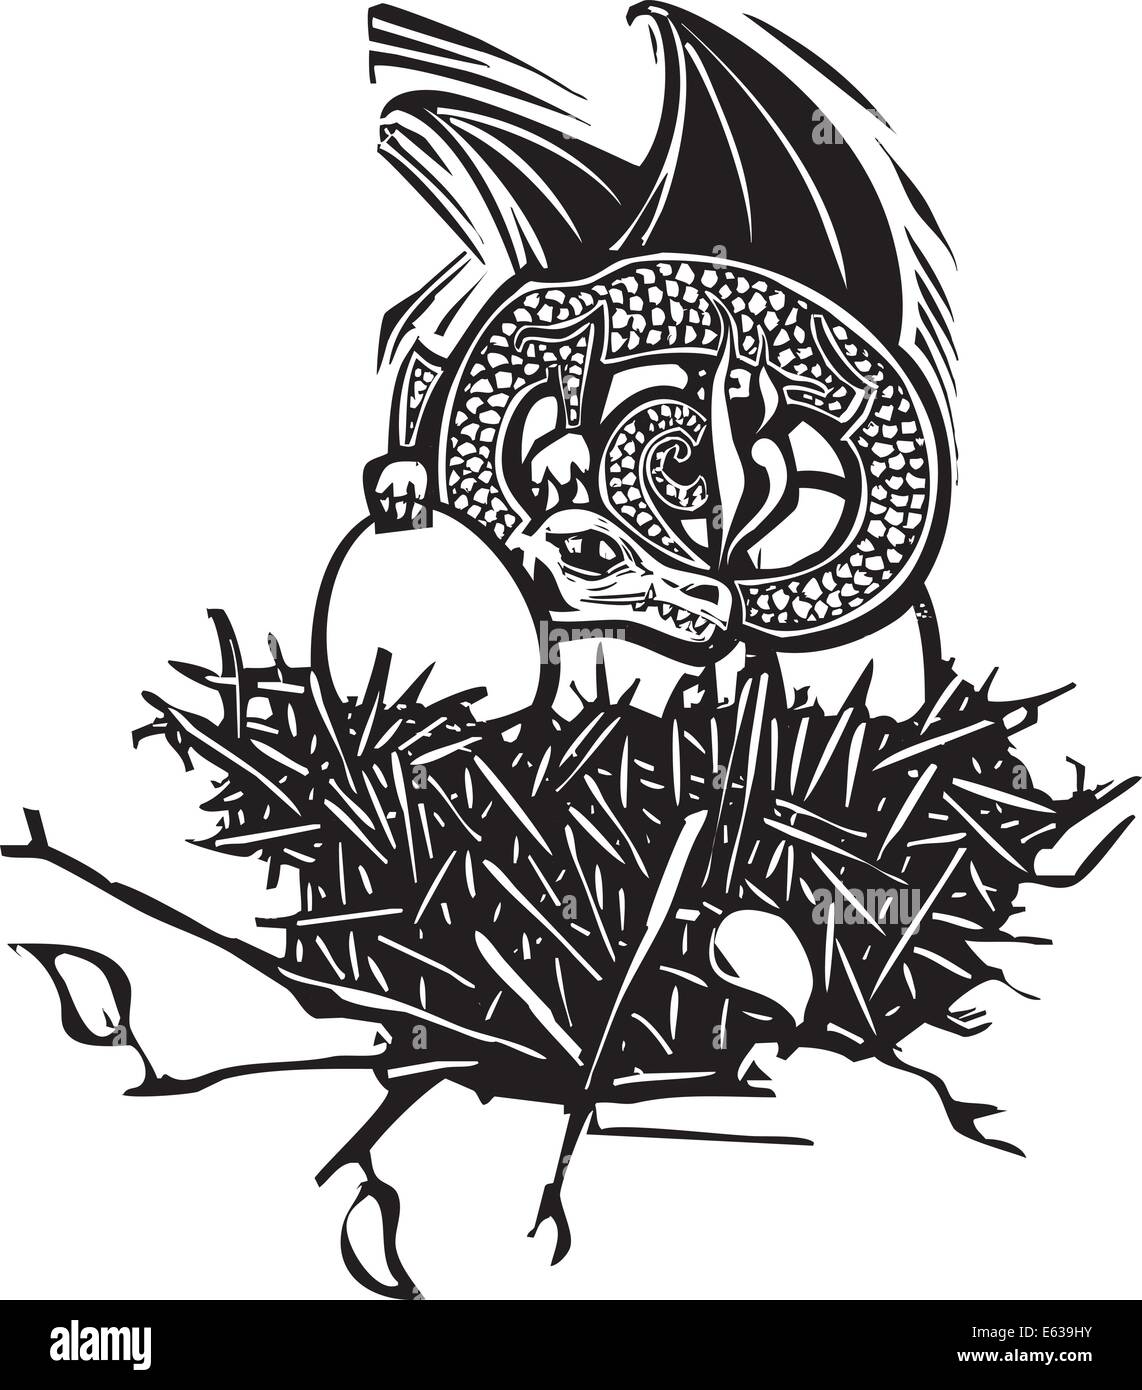 Holzschnitt-Stil Bild eines Drachen schlafen in ein Nest mit Eiern. Stock Vektor